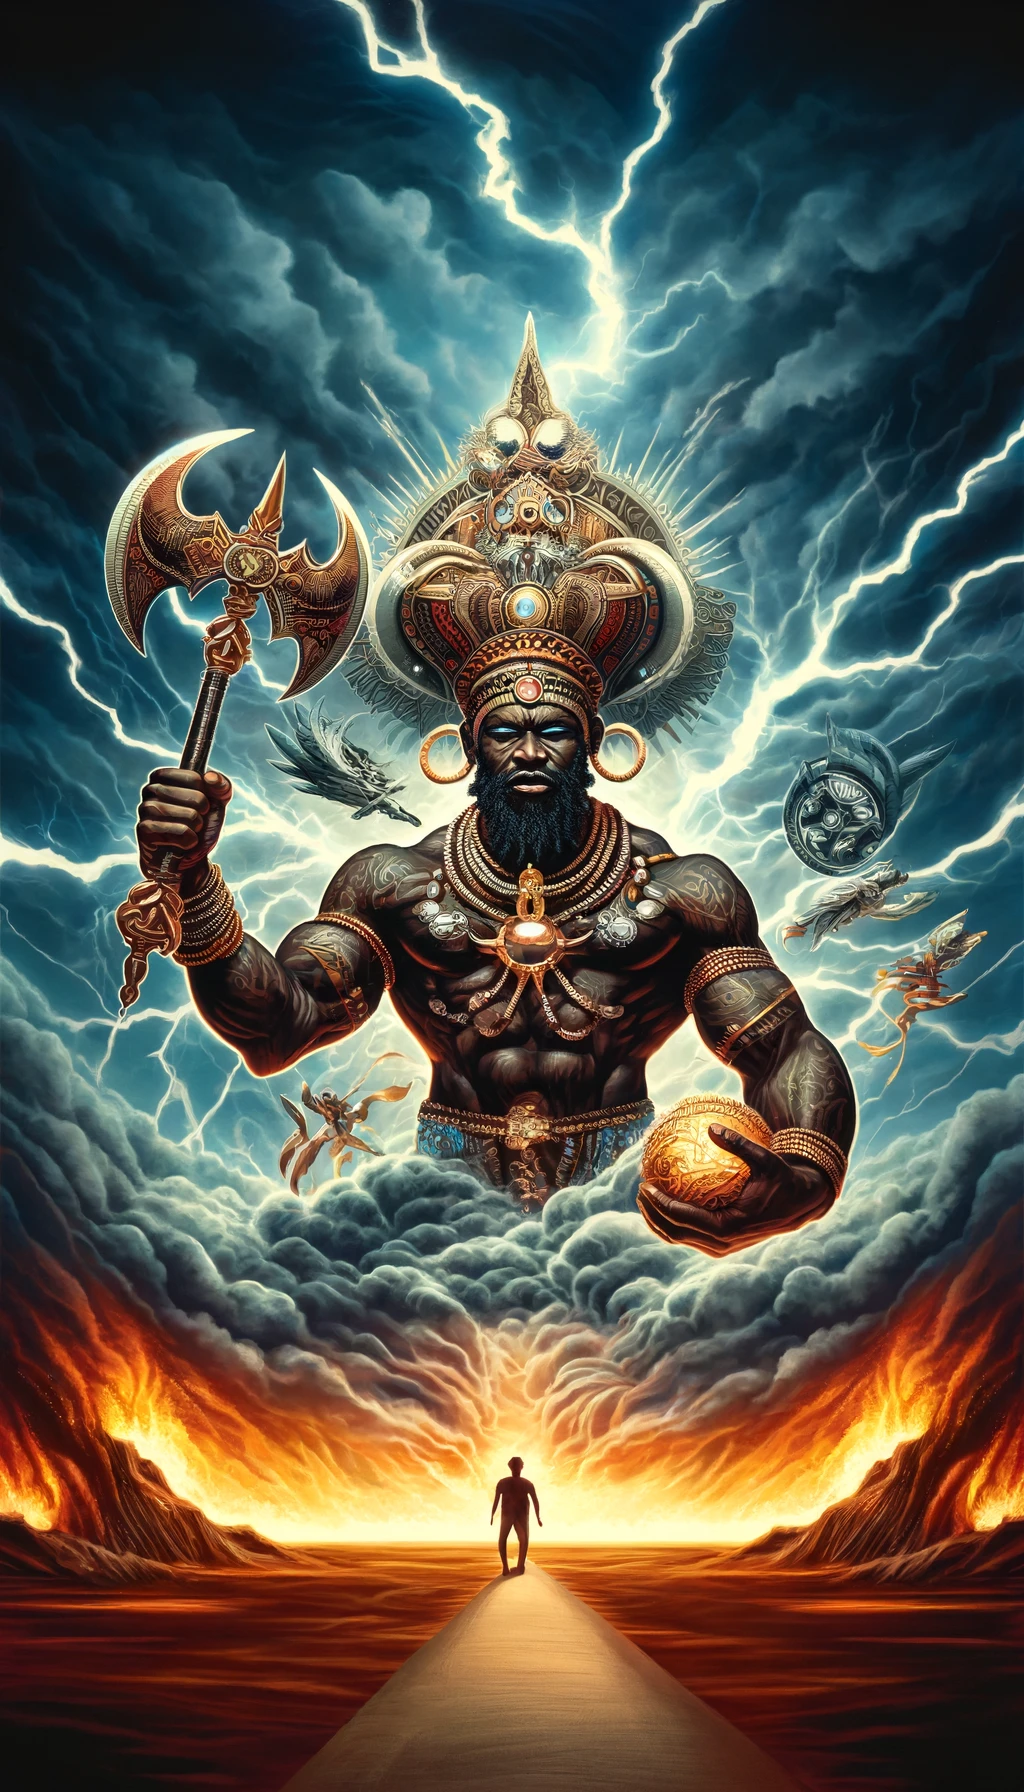 Imagen de Shango, Orisha de la religión yoruba, con apariencia de guerrero, sosteniendo un hacha de doble filo, rodeado de relámpagos y nubes de tormenta, representando su dominio sobre el trueno y el fuego.